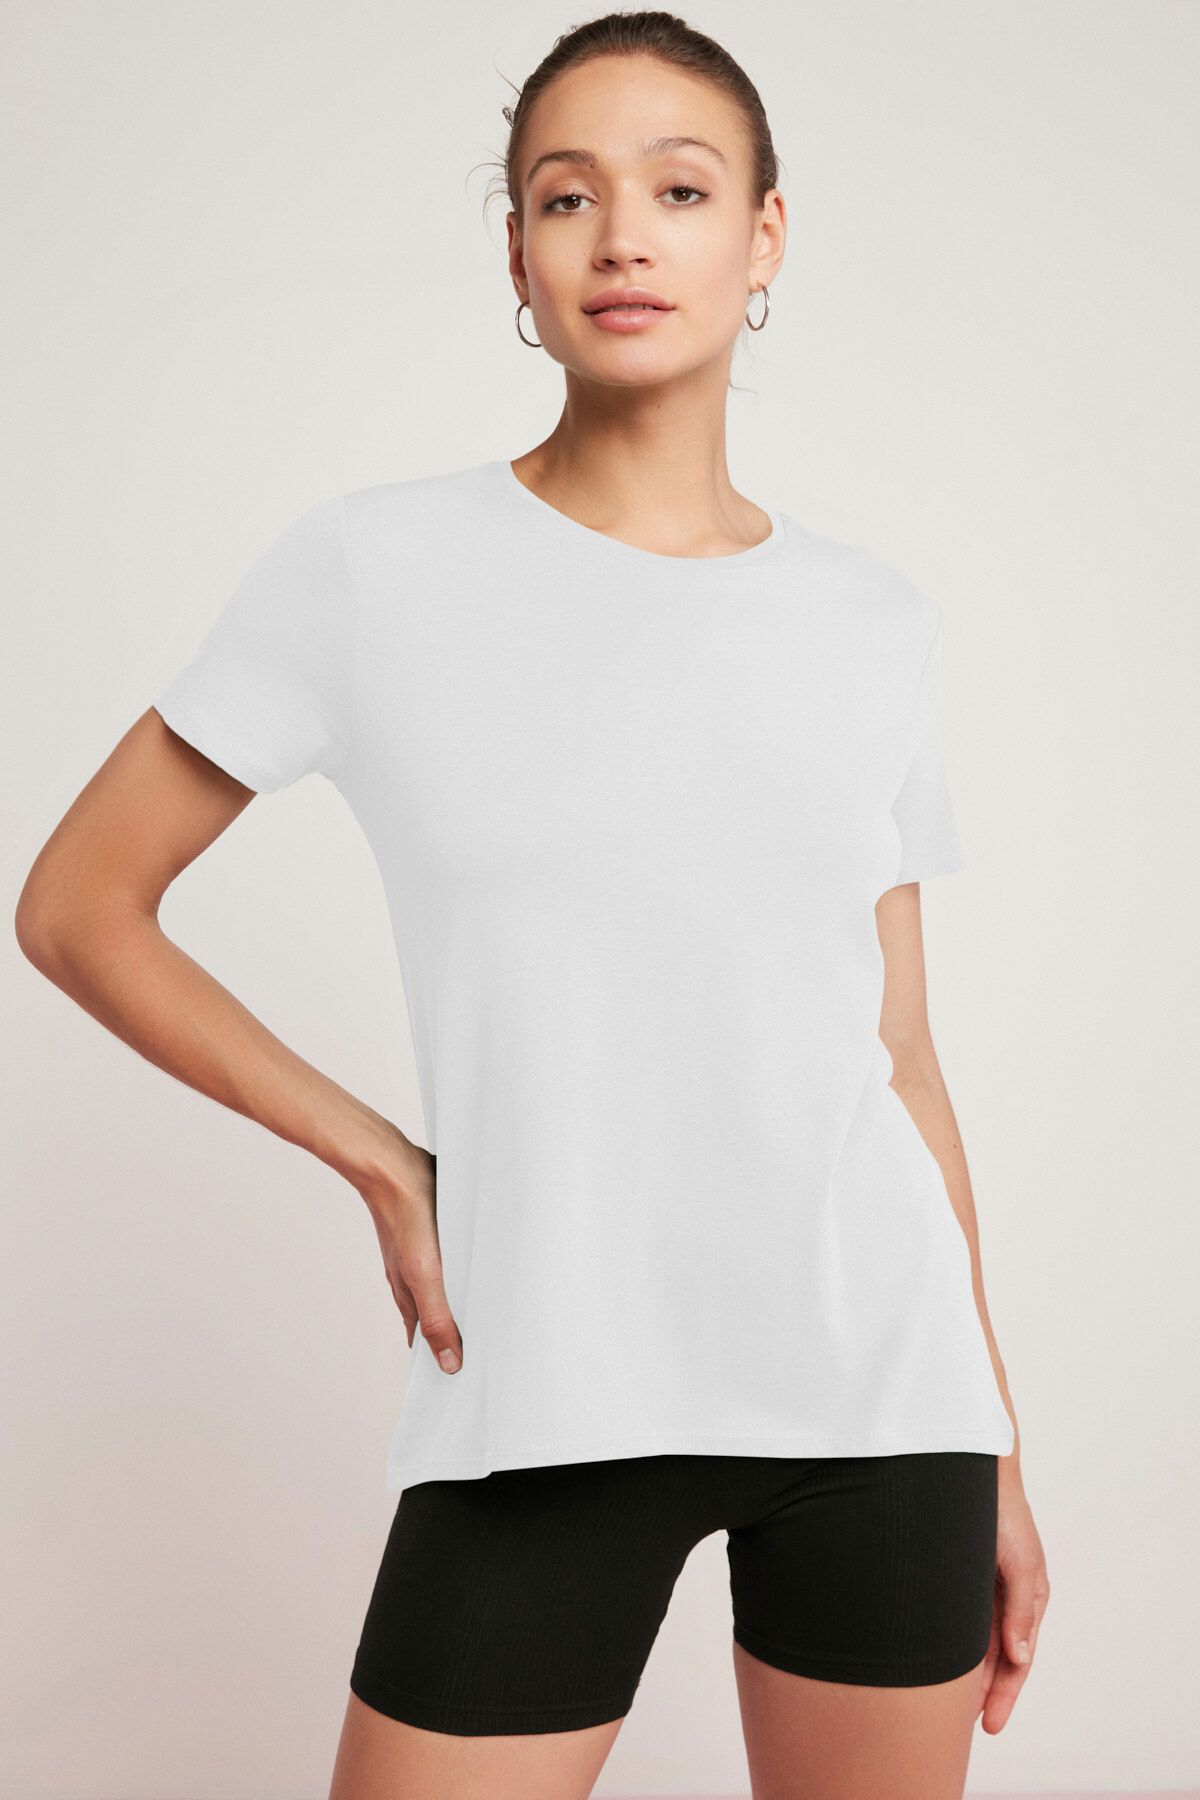 ETHIQUET Tatum Kadın 100% Pamuk Süprem Yuvarlak Yaka Comfort Fit Beyaz T-shirt